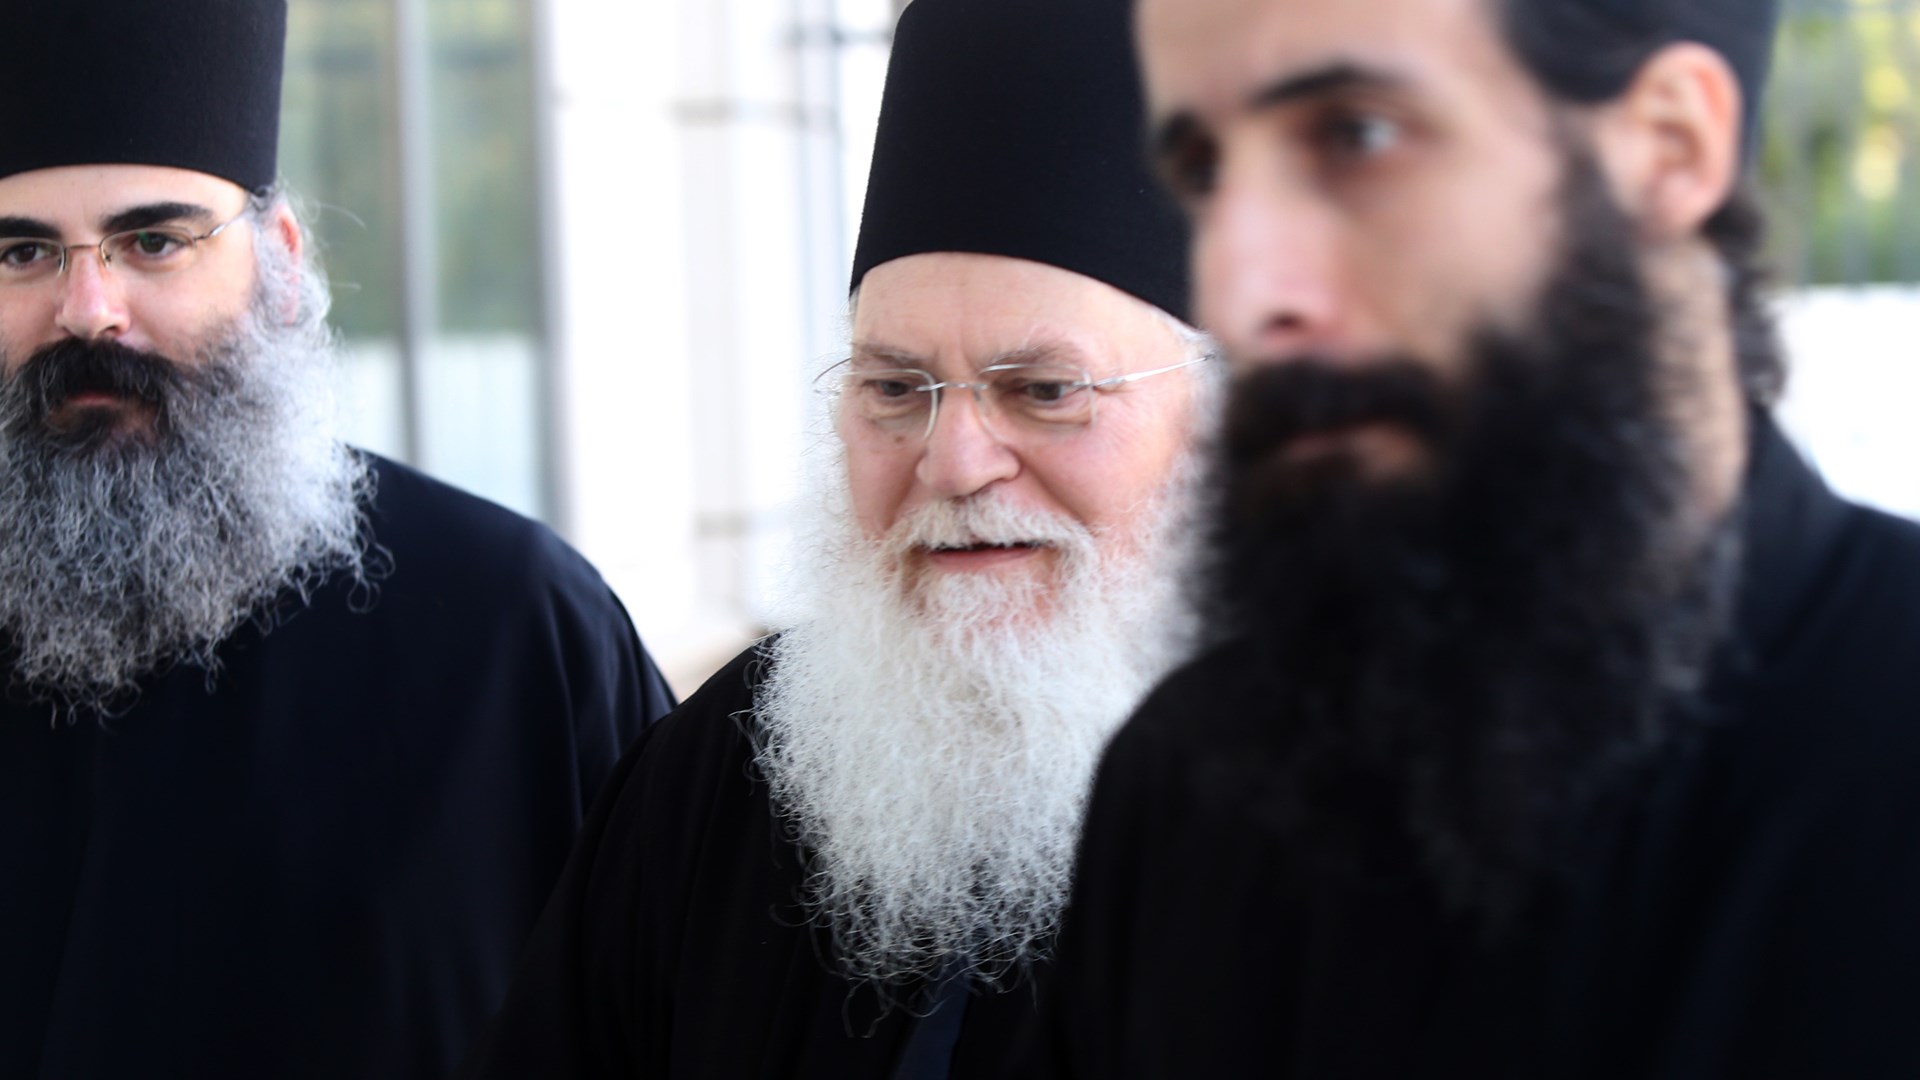 Ο ηγούμενος Εφραίμ και ο μοναχός Αρσένιος στο Εφετείο Αθηνών – ΦΩΤΟ